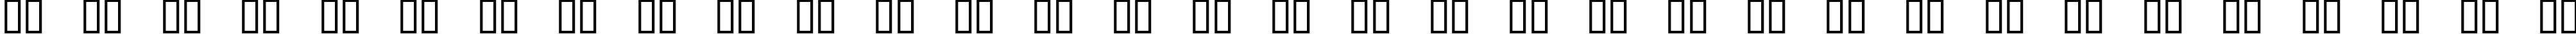 Пример написания русского алфавита шрифтом Loveladies